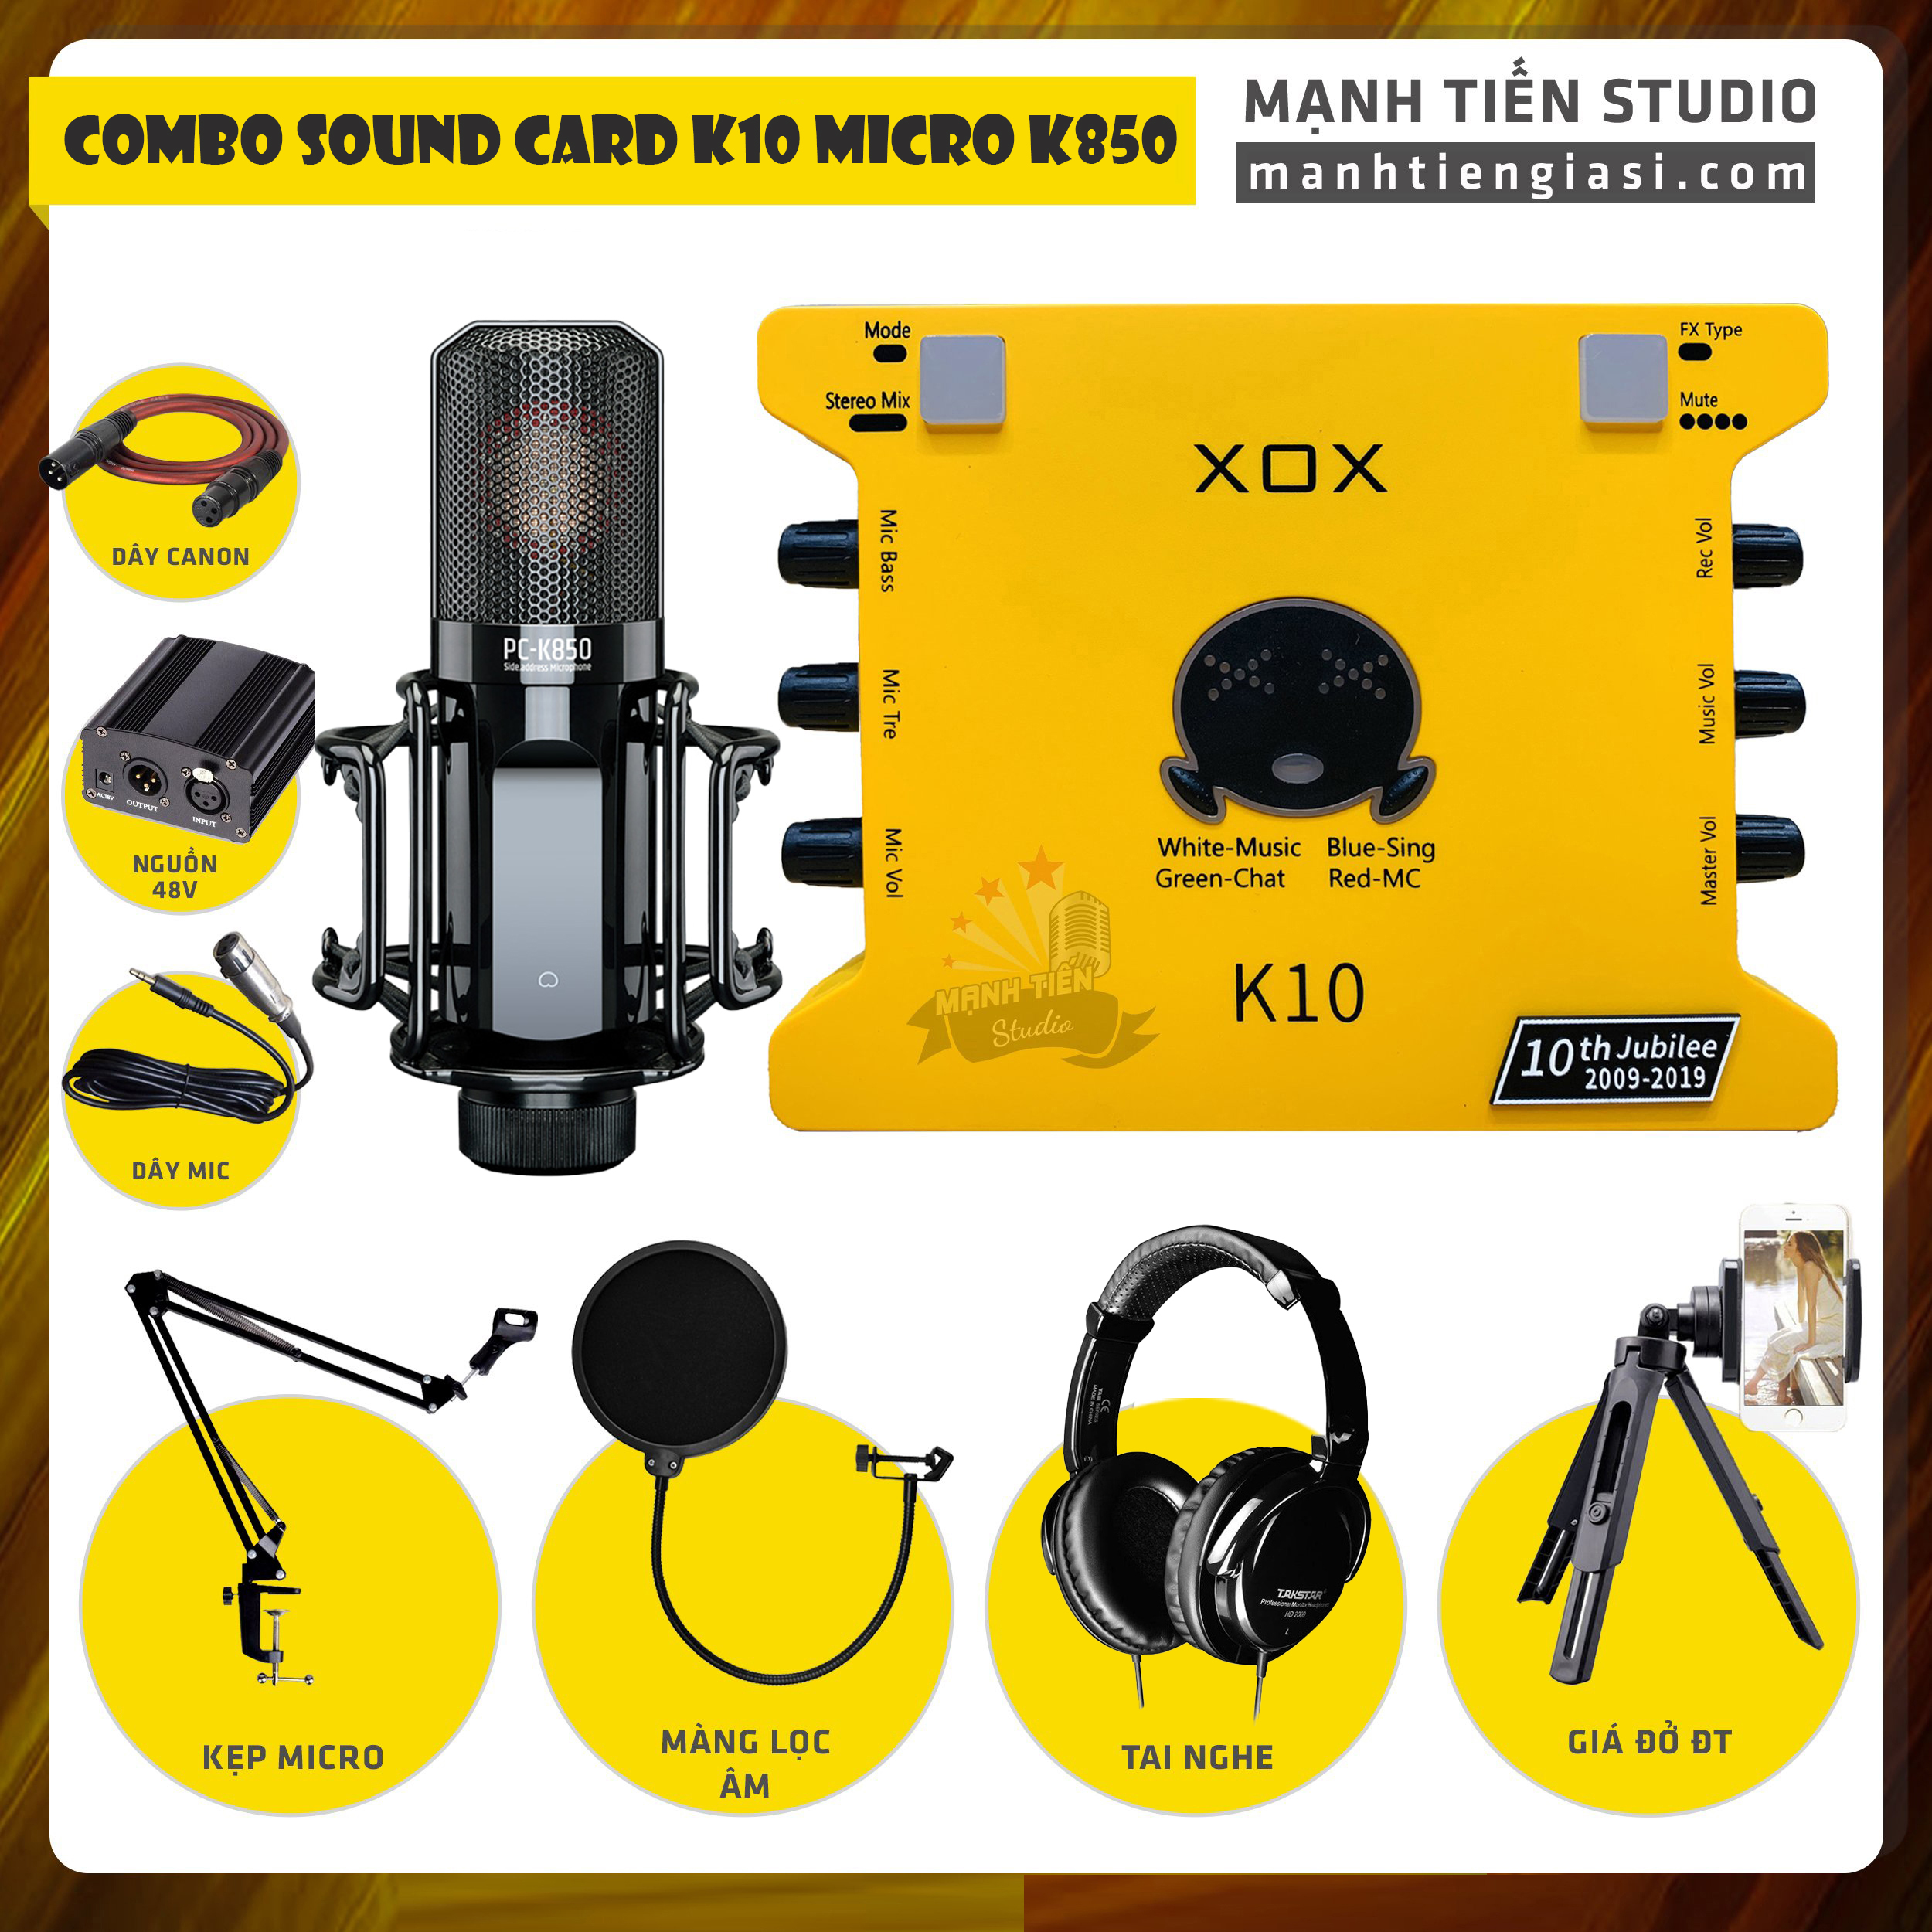 Combo thu âm, livestream Micro TakStar PC-K850, Sound card XOX K10 Jubilee - Kèm full phụ kiện nguồn 48V, kẹp micro, màng lọc, tai nghe, giá đỡ ĐT - Hỗ trợ thu âm, karaoke online chuyên nghiệp - Hàng chính hãng